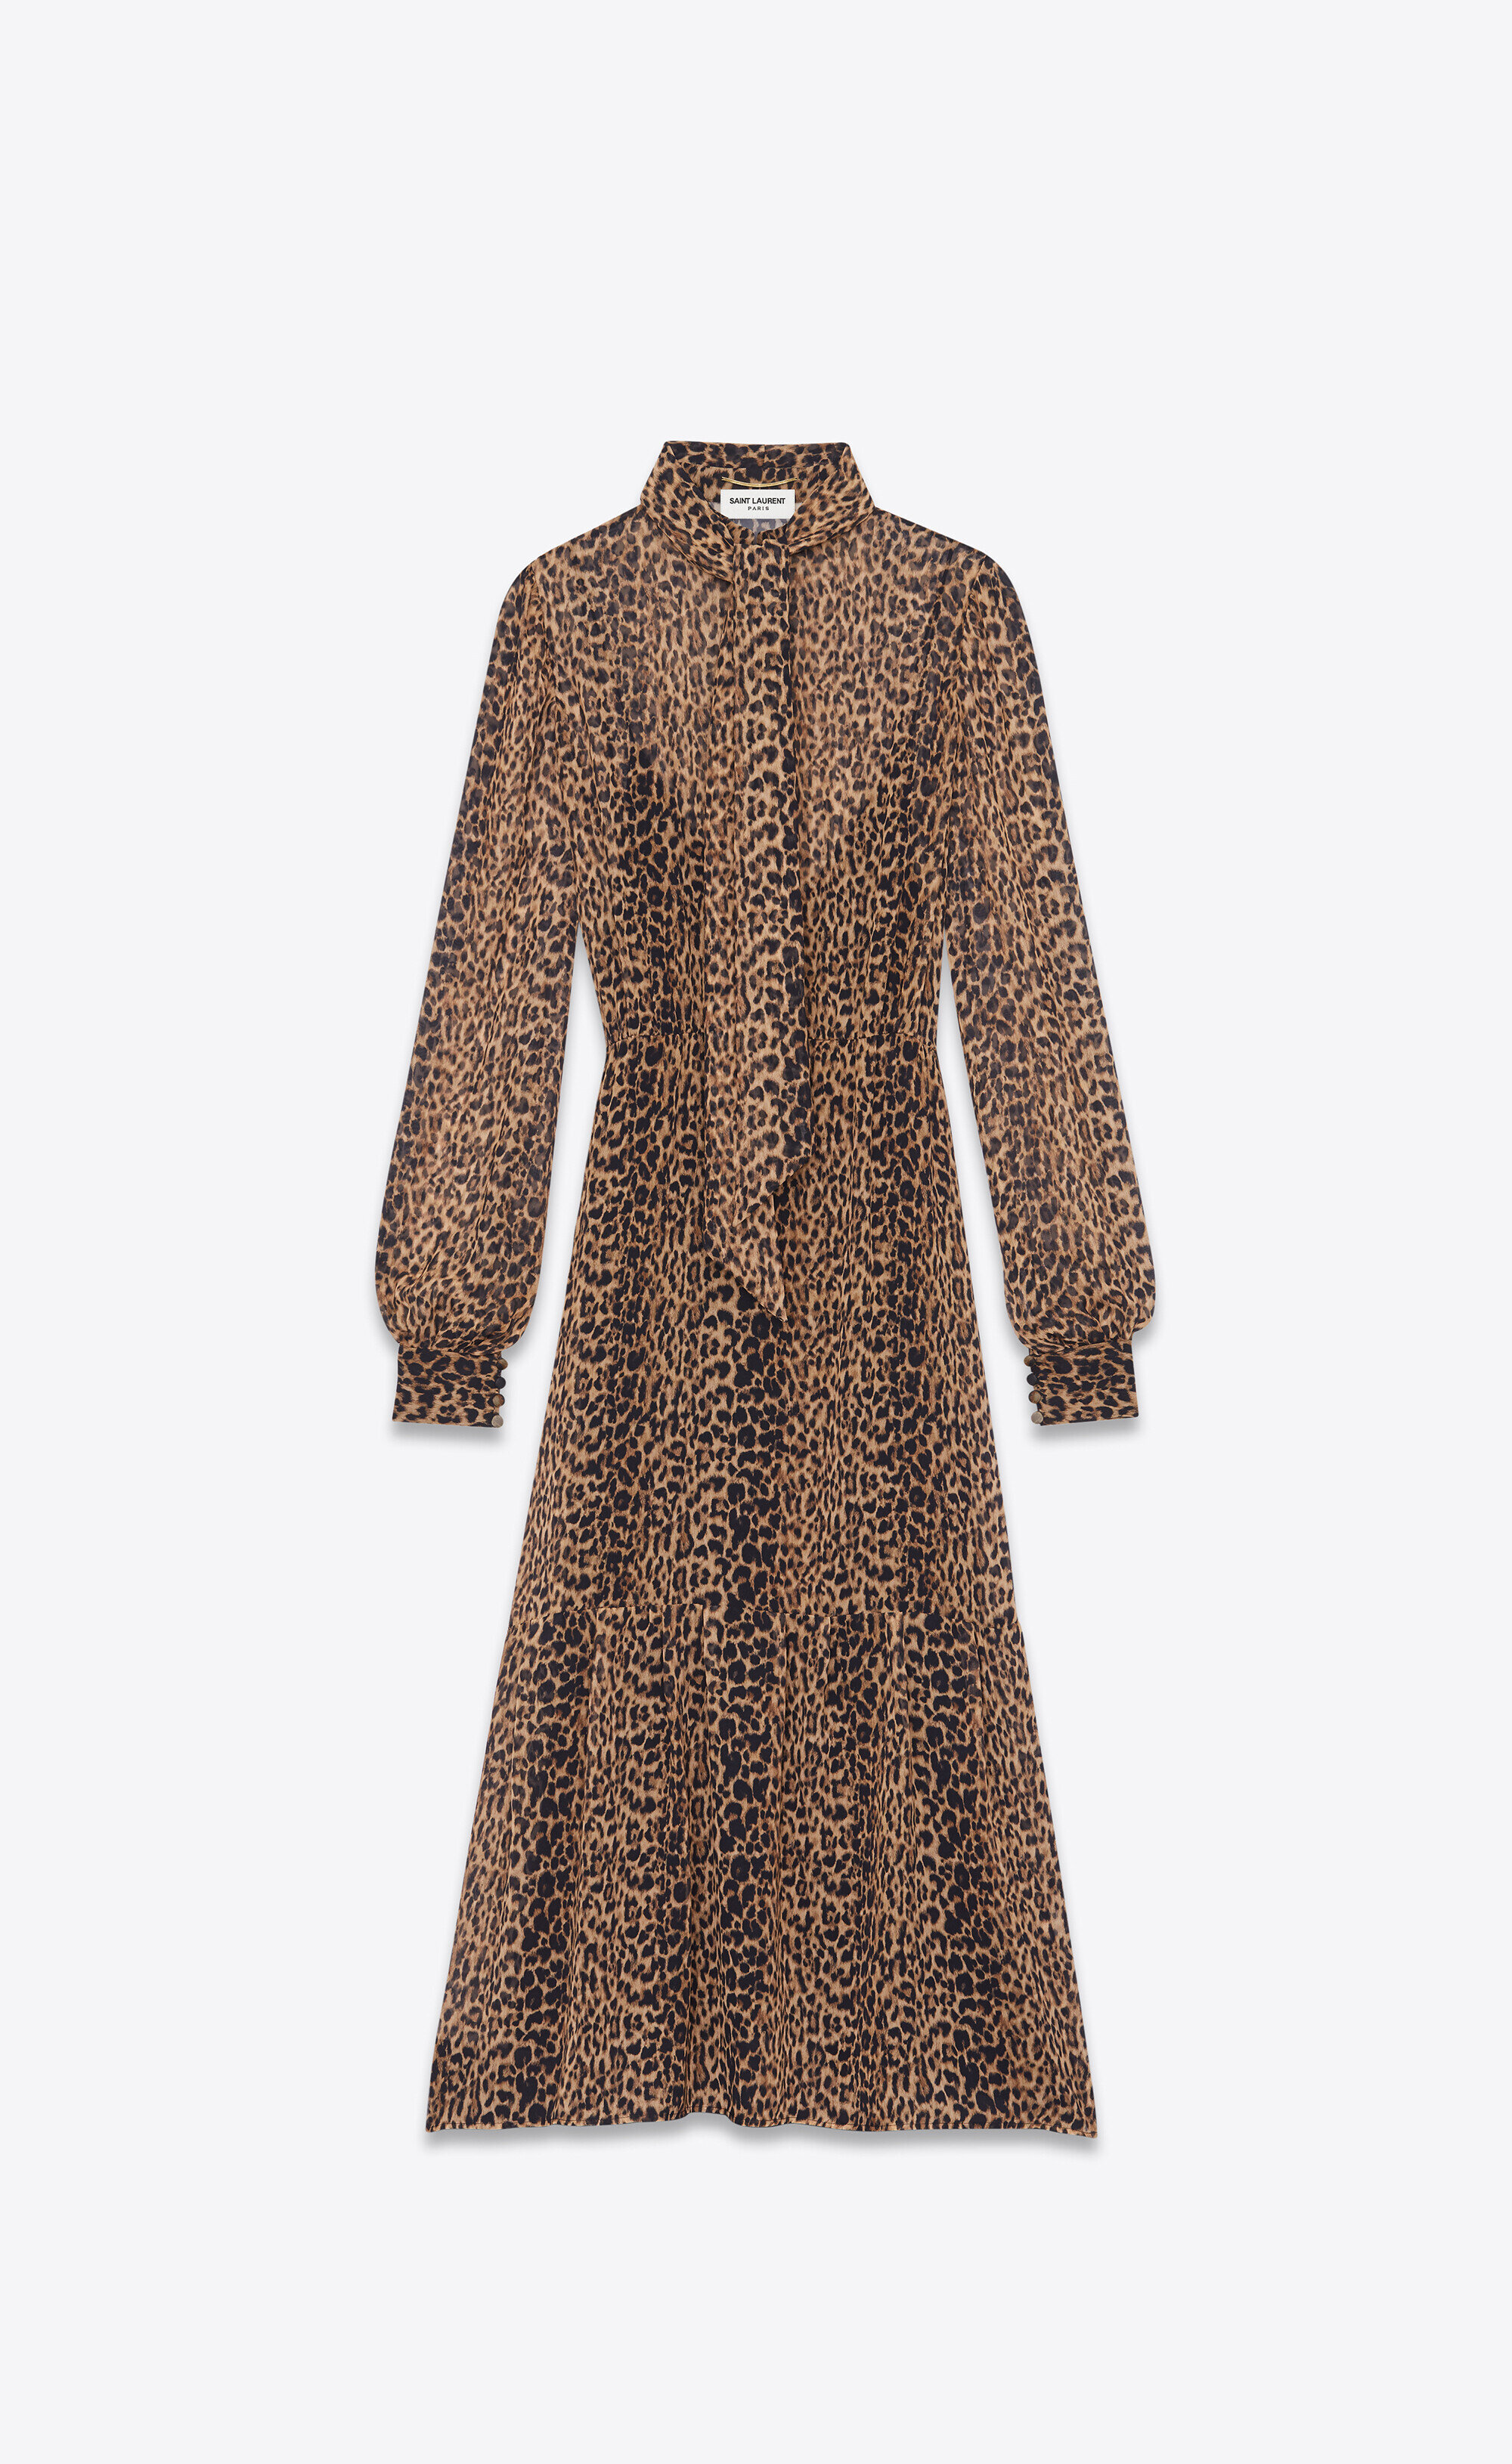 Saint Laurent Lavallière-Neck Long Dress in Leopard-Print 